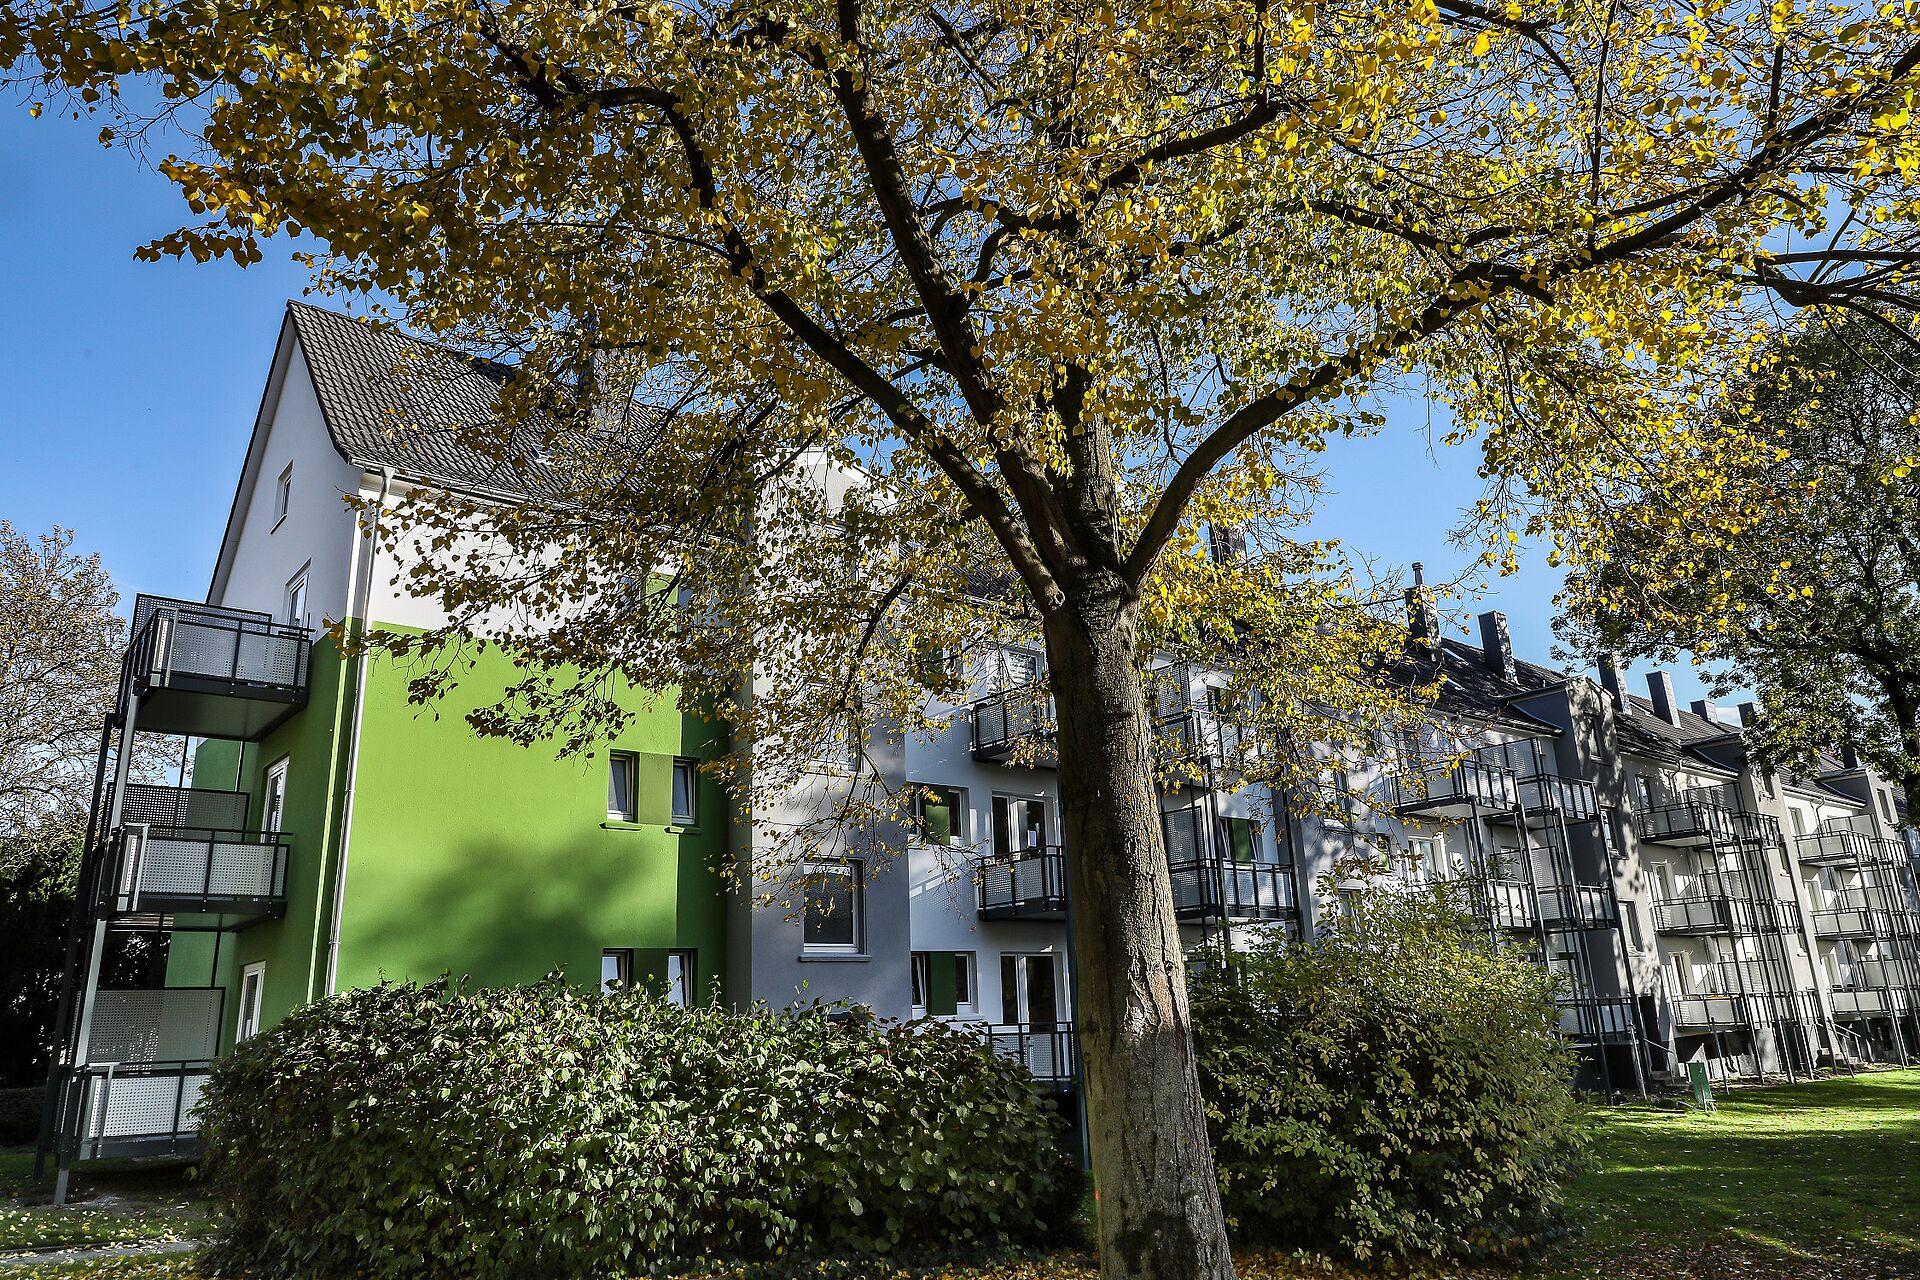 Mehrfamilienhaus in grün und weiß nach Instandhaltung inmitten von grünen Bäumen